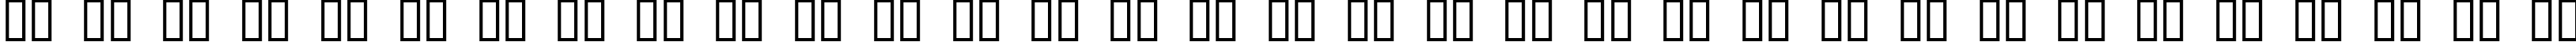 Пример написания русского алфавита шрифтом Acquaintance